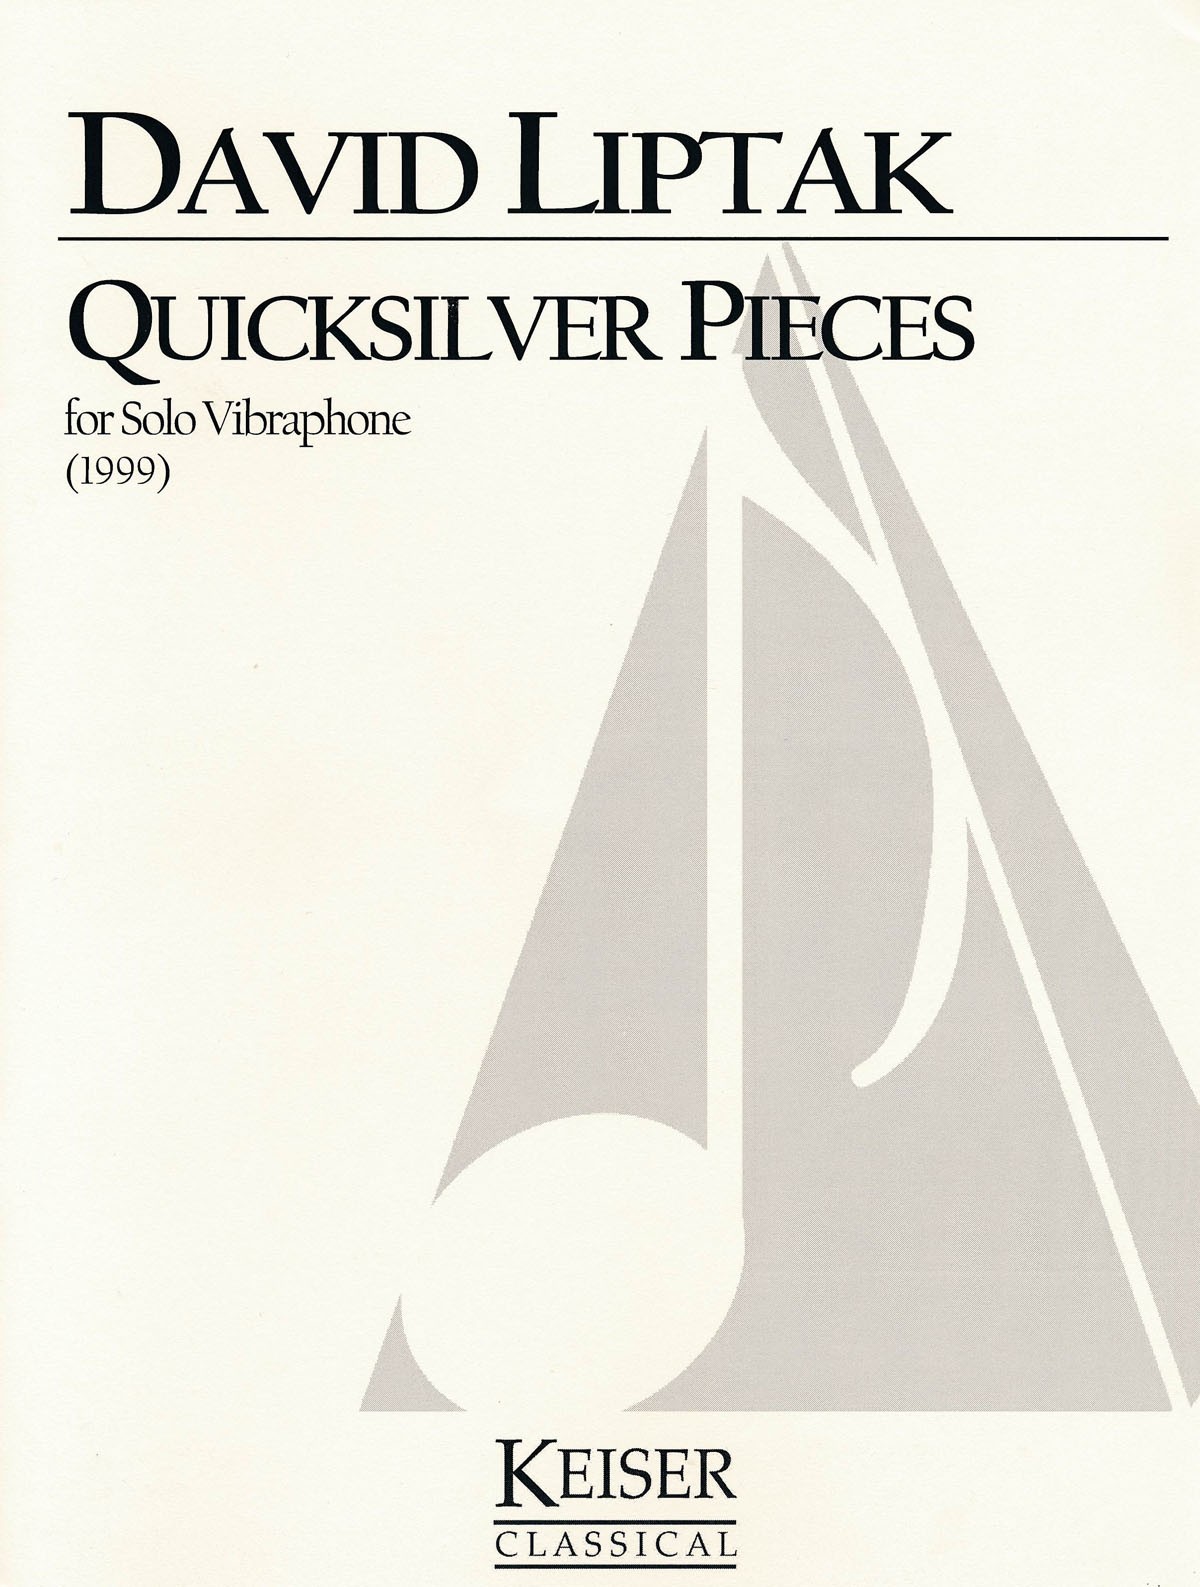 Quicksilver Pieces by David Liptak